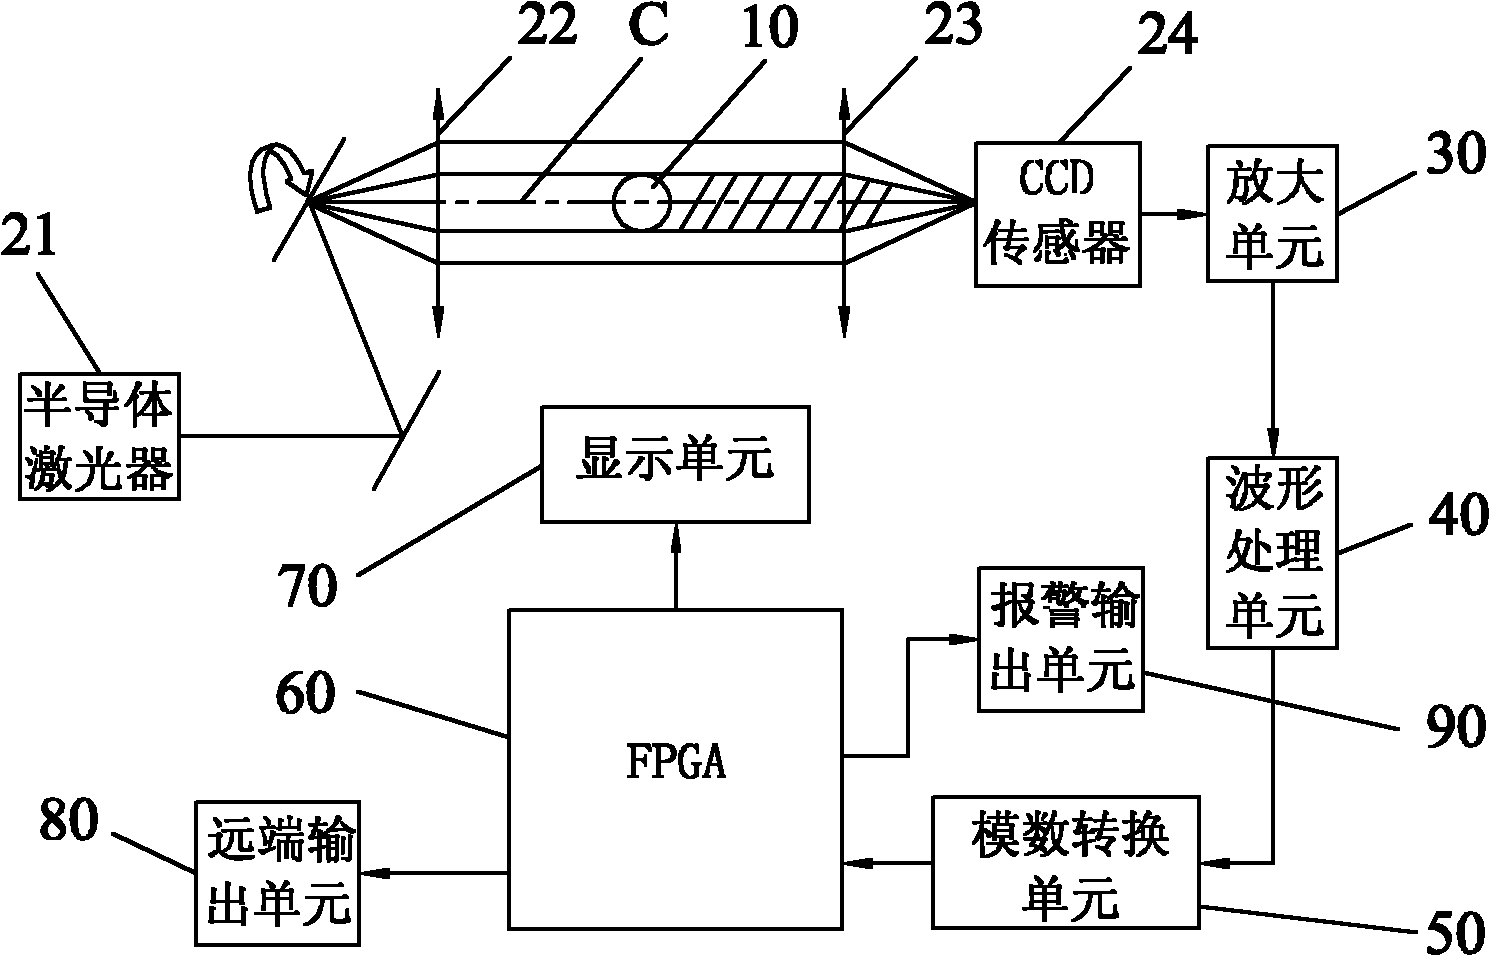 FPGA (Field Programmable Gate Array) based laser diameter measuring method